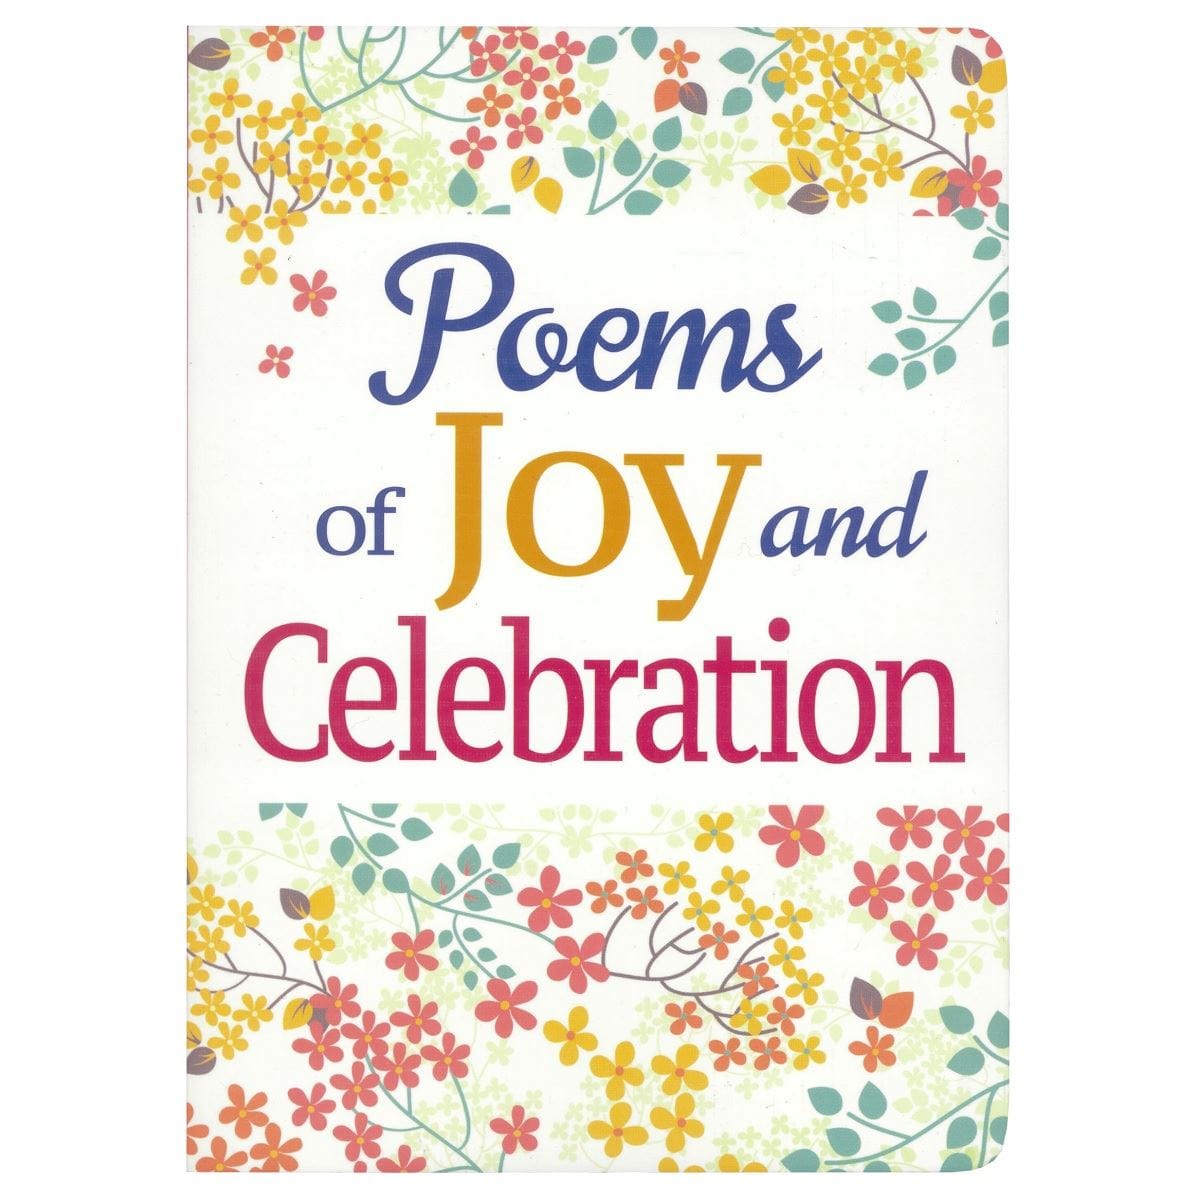 Poems Of Joy and Celebration